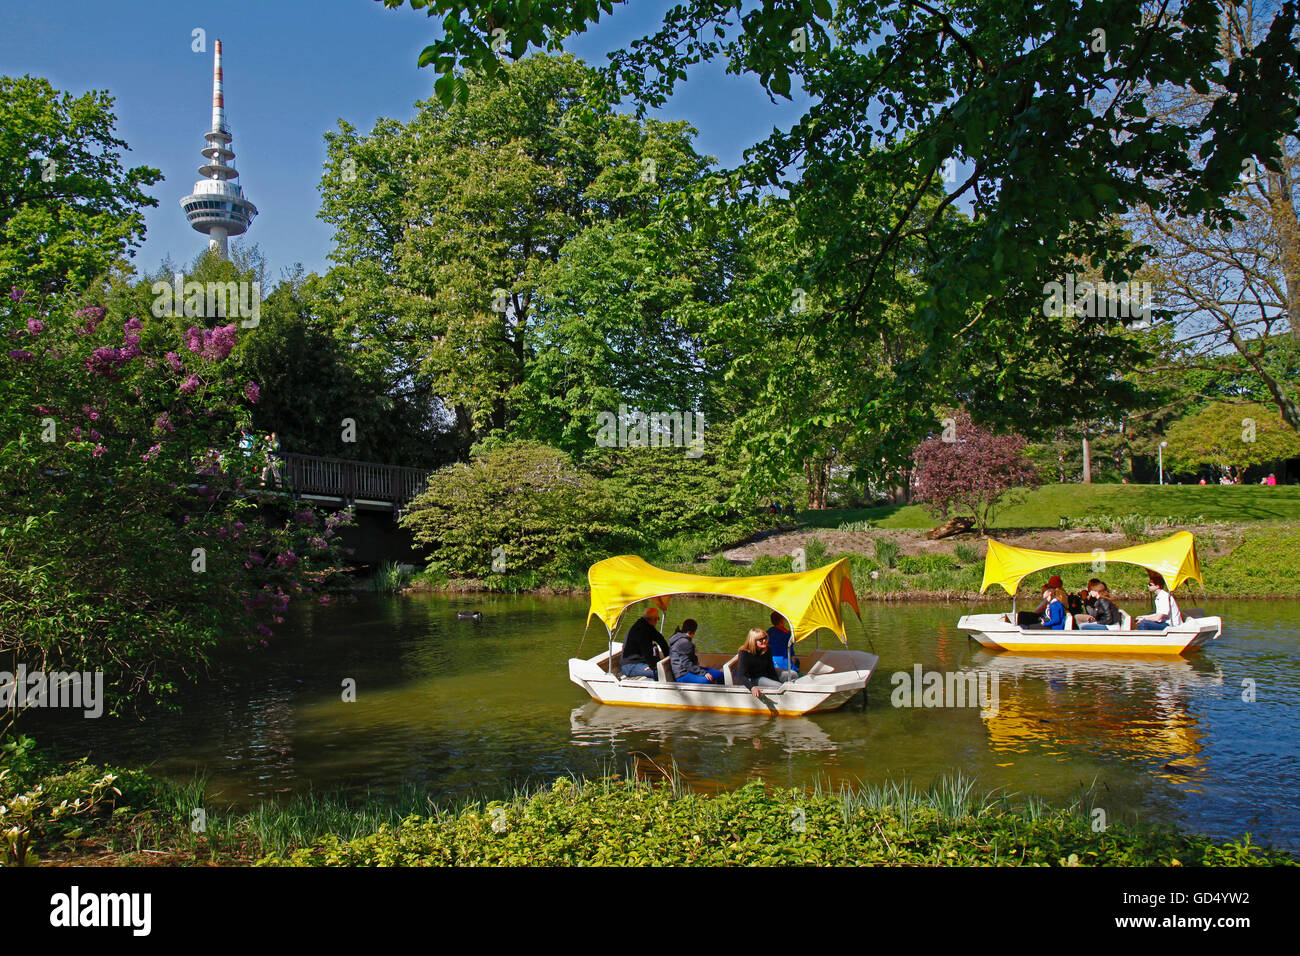 Gondoletta bateaux, Kutzer étang, tour de télévision, Luisenpark, Mannheim, Baden-Wurttemberg, Germany Banque D'Images